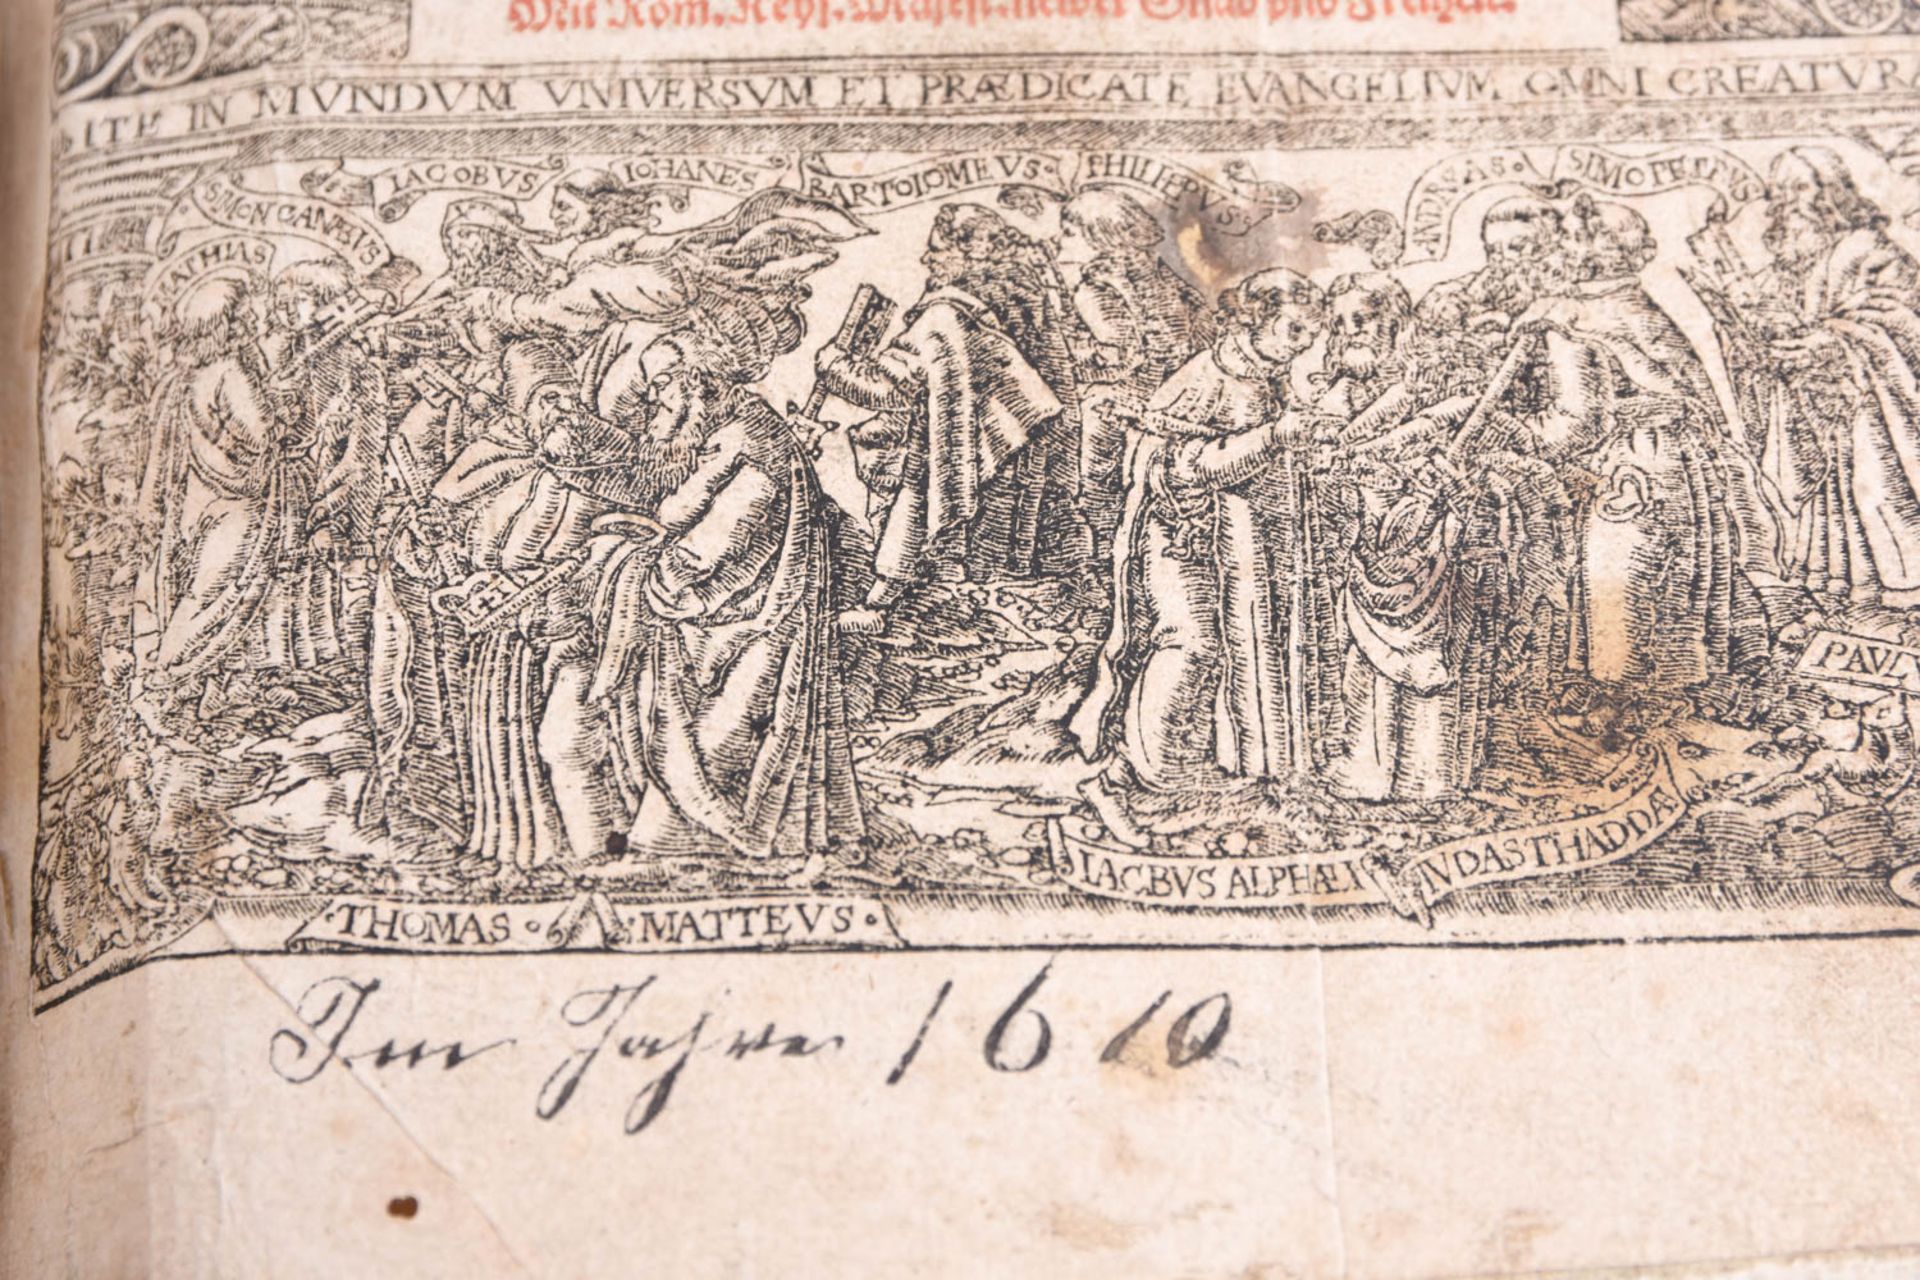 Bibel, 1610 - Image 6 of 17